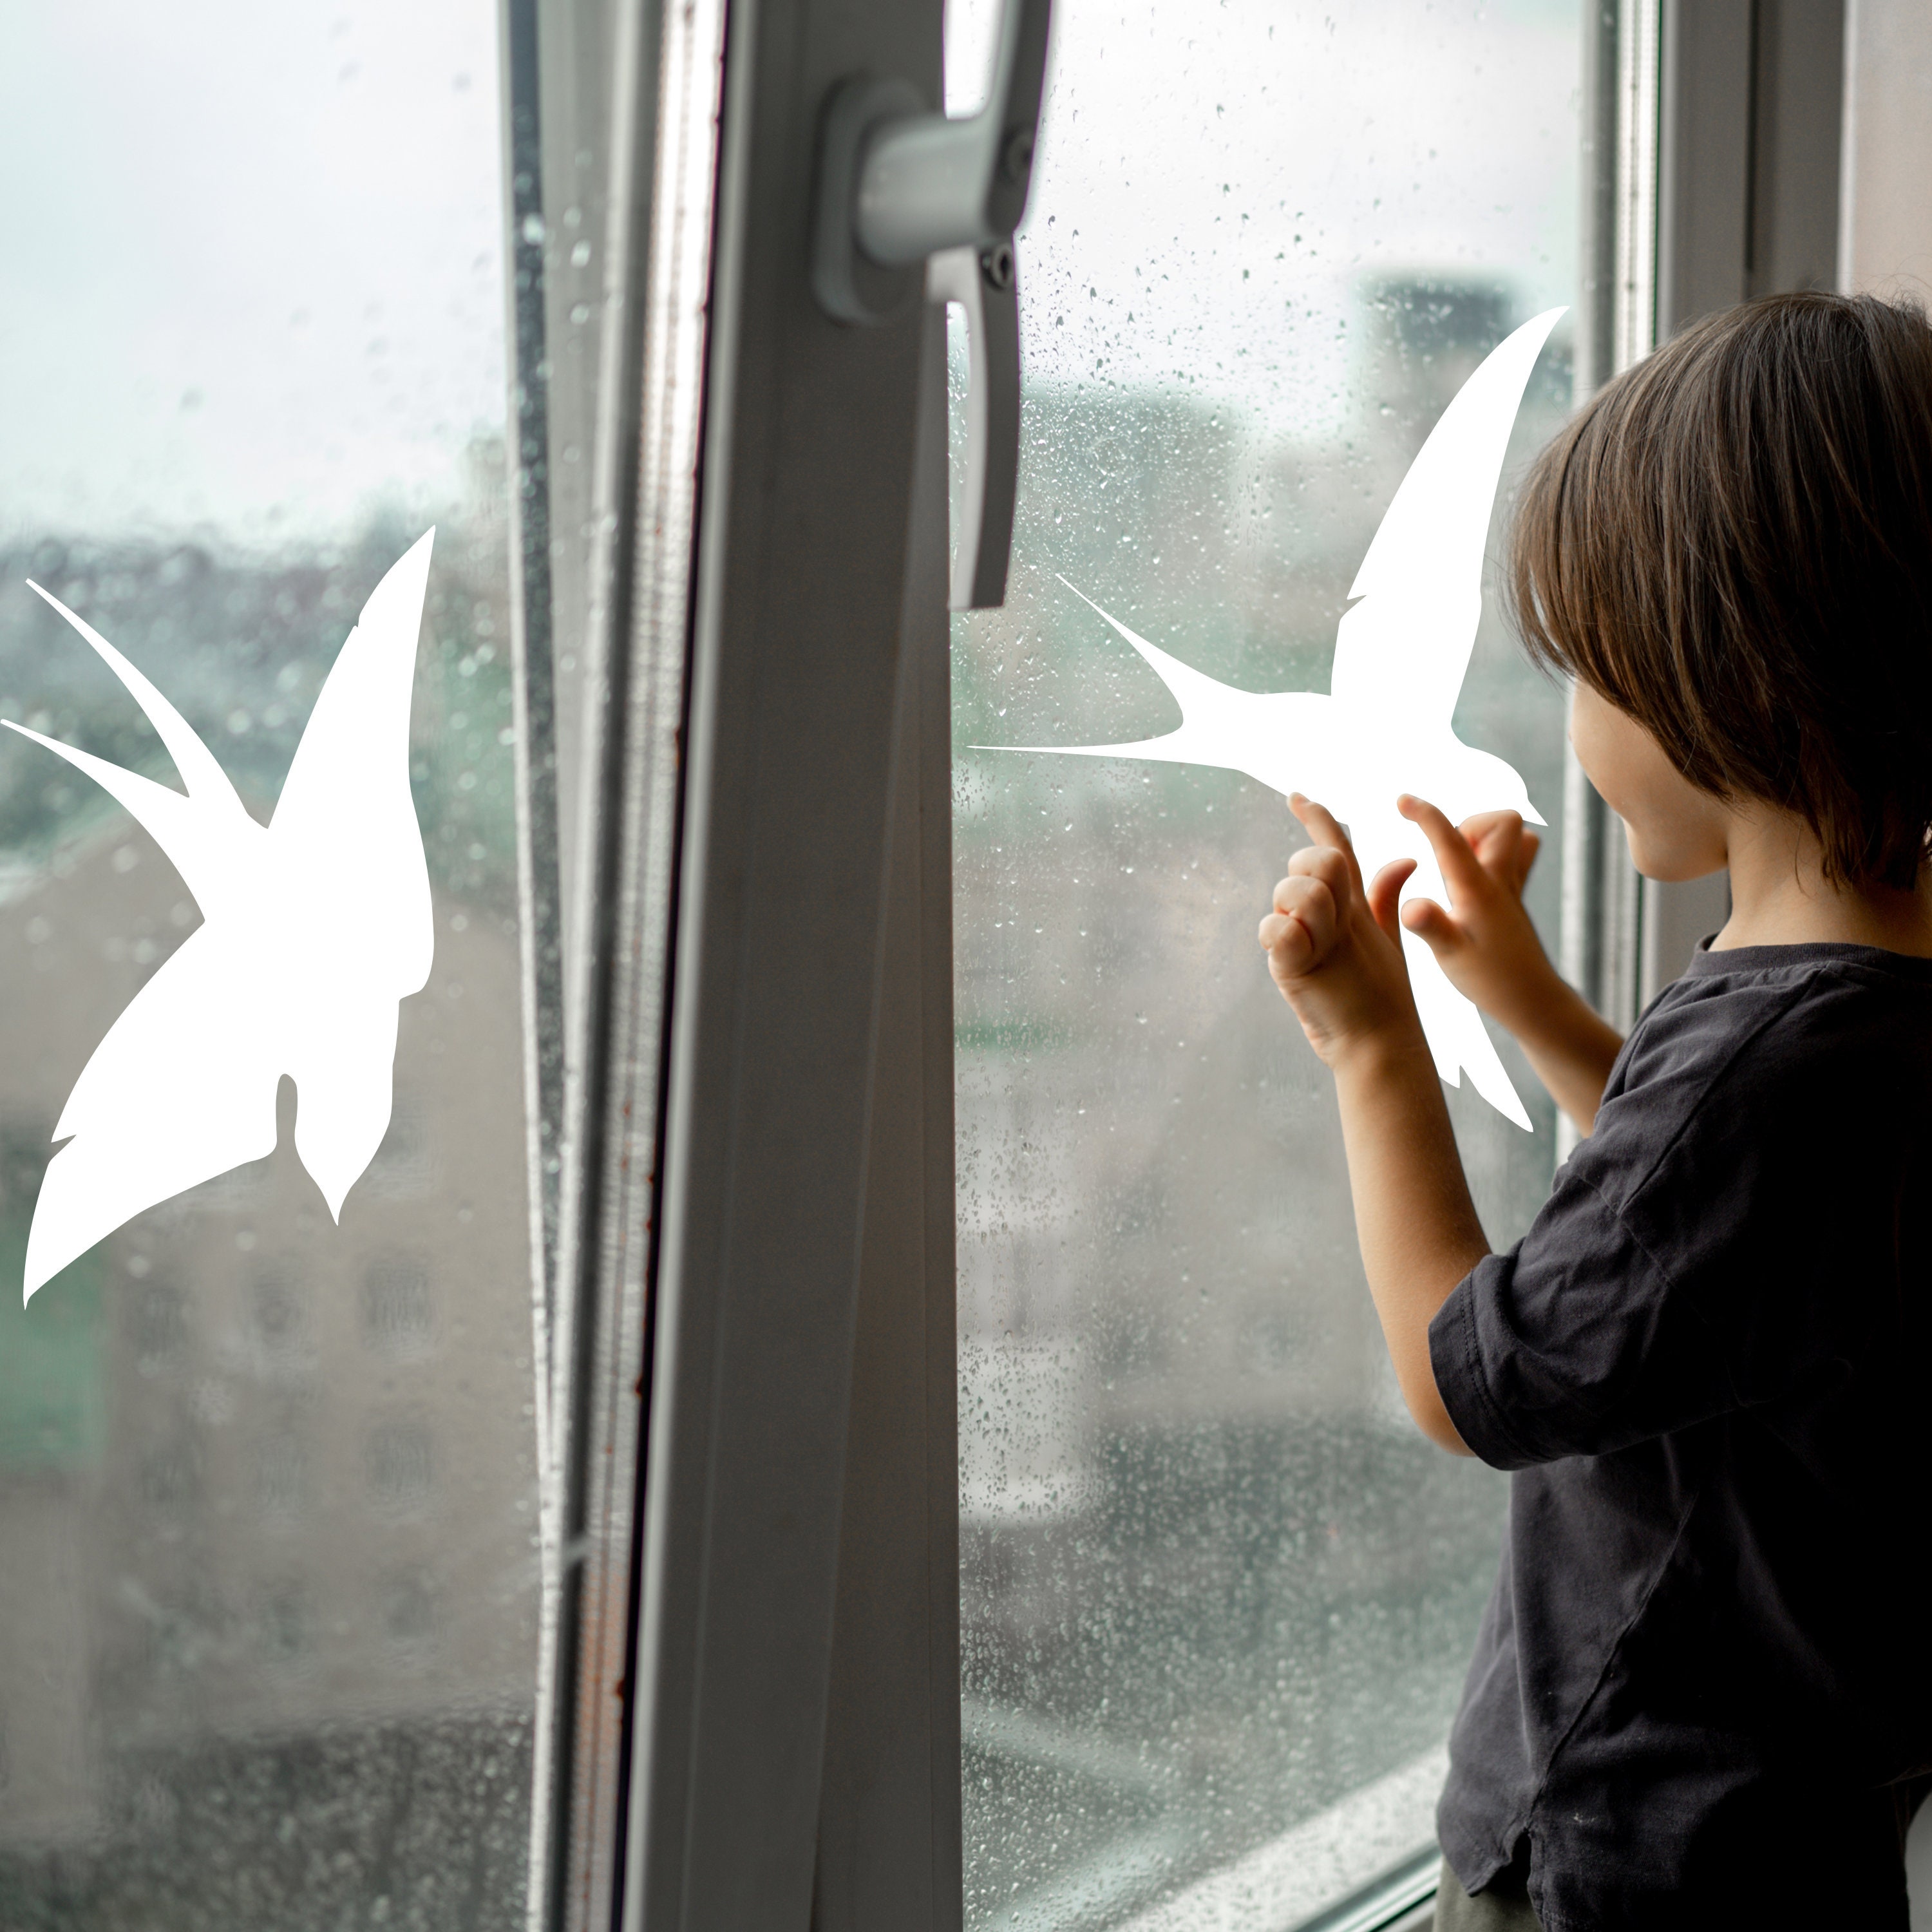 Anti-Kollisions-Fenster-Vogel-Aufkleber Glastürschutz Save Birds Window  Decals – Set mit 12 Stück (Kombinationen)